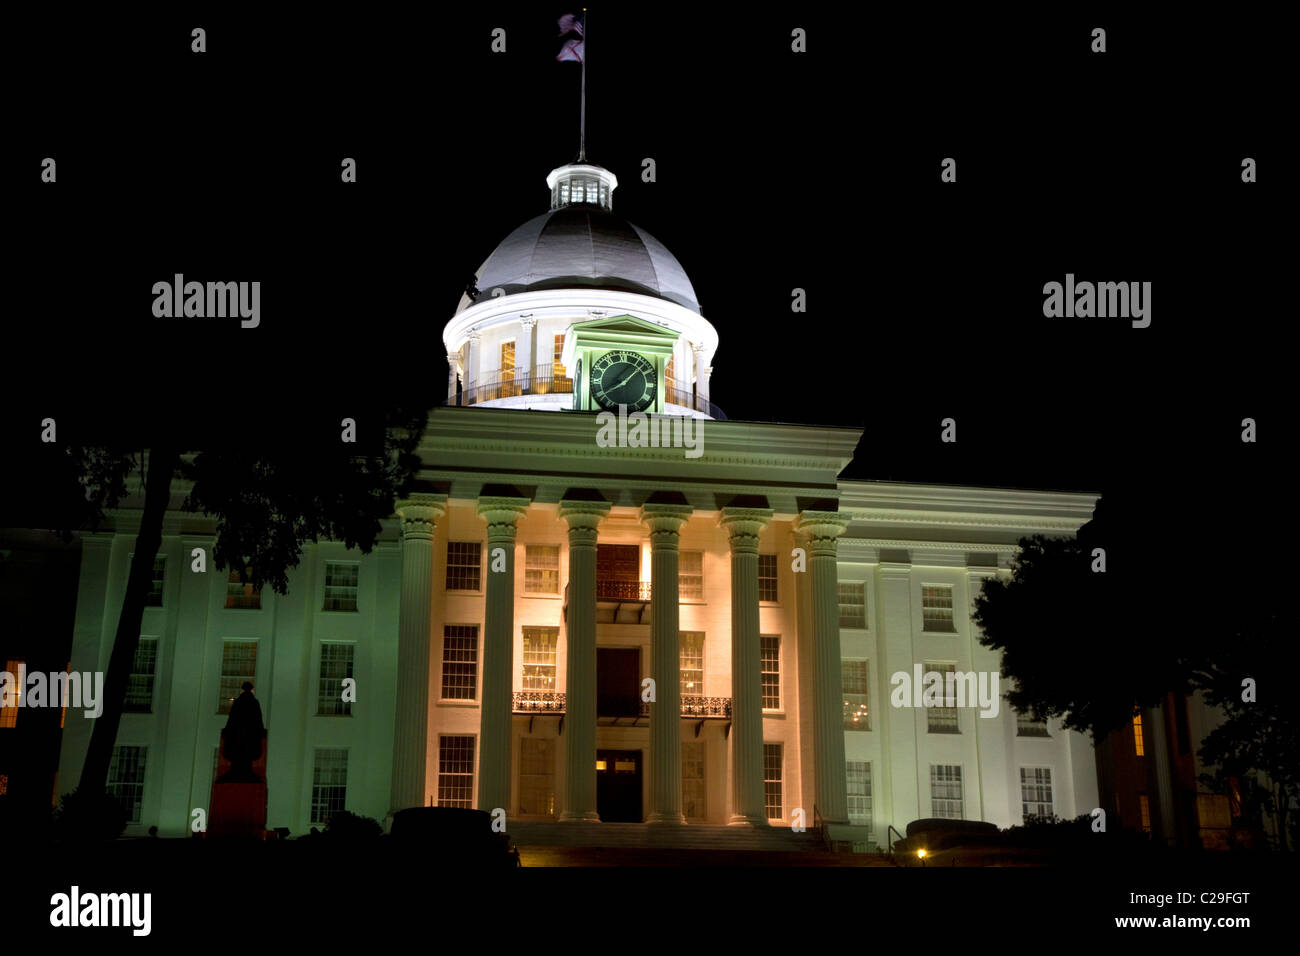 Das Alabama State Capitol Building in der Nacht befindet sich auf Goat Hill in Montgomery, Alabama, USA. Stockfoto